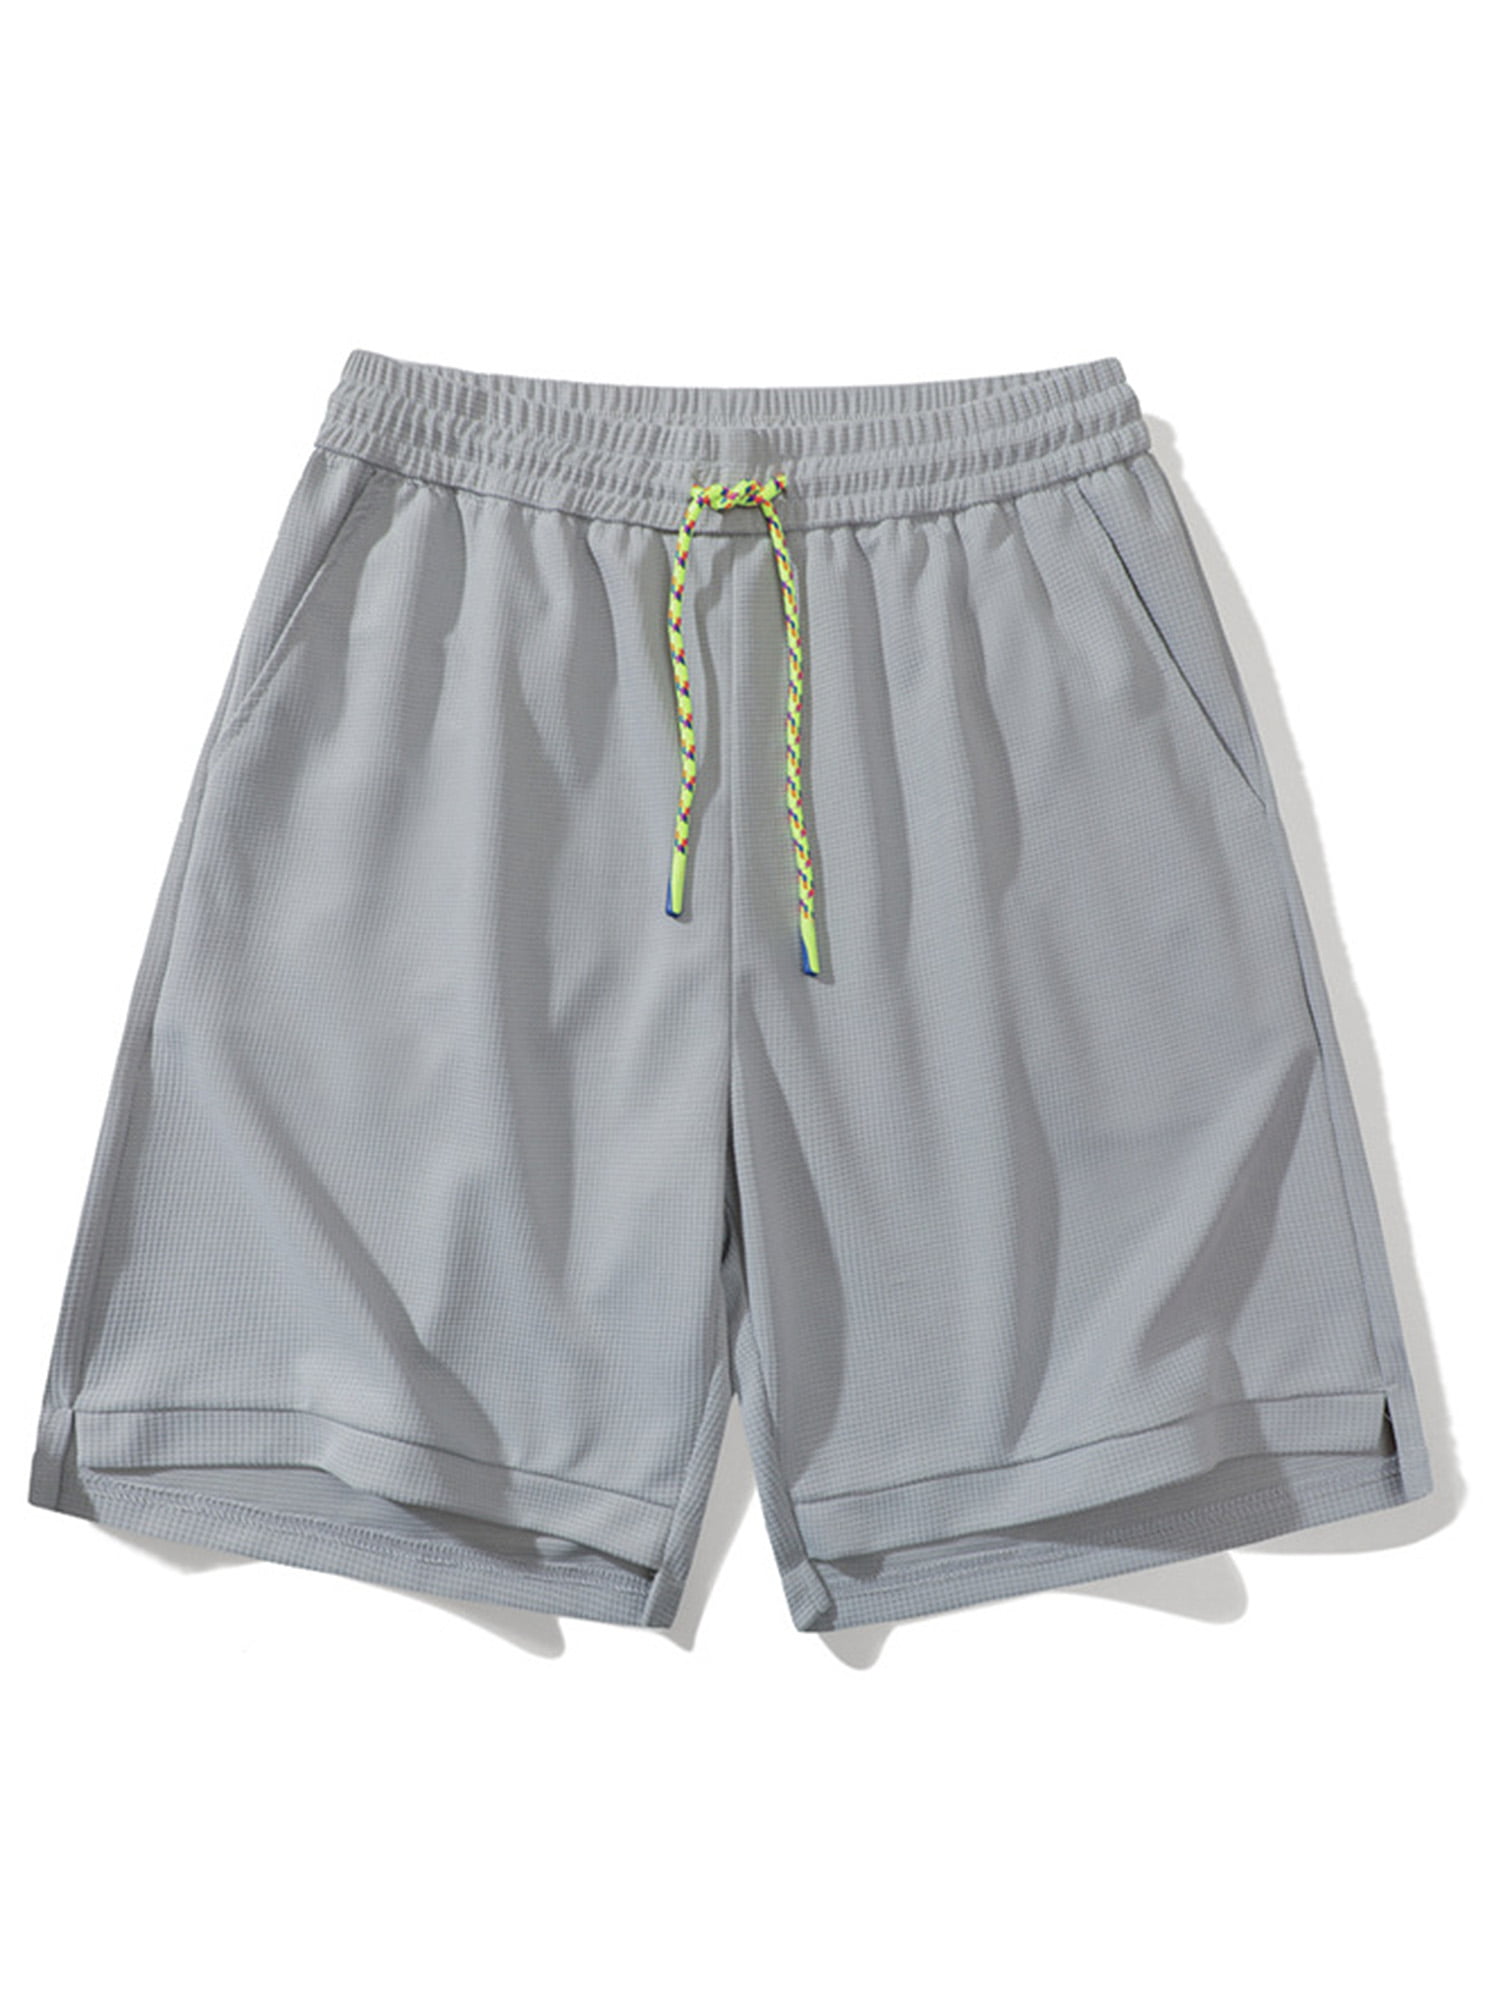 Voguele Men Beach Shorts Drawstring Summer Short Pants High Waist ...